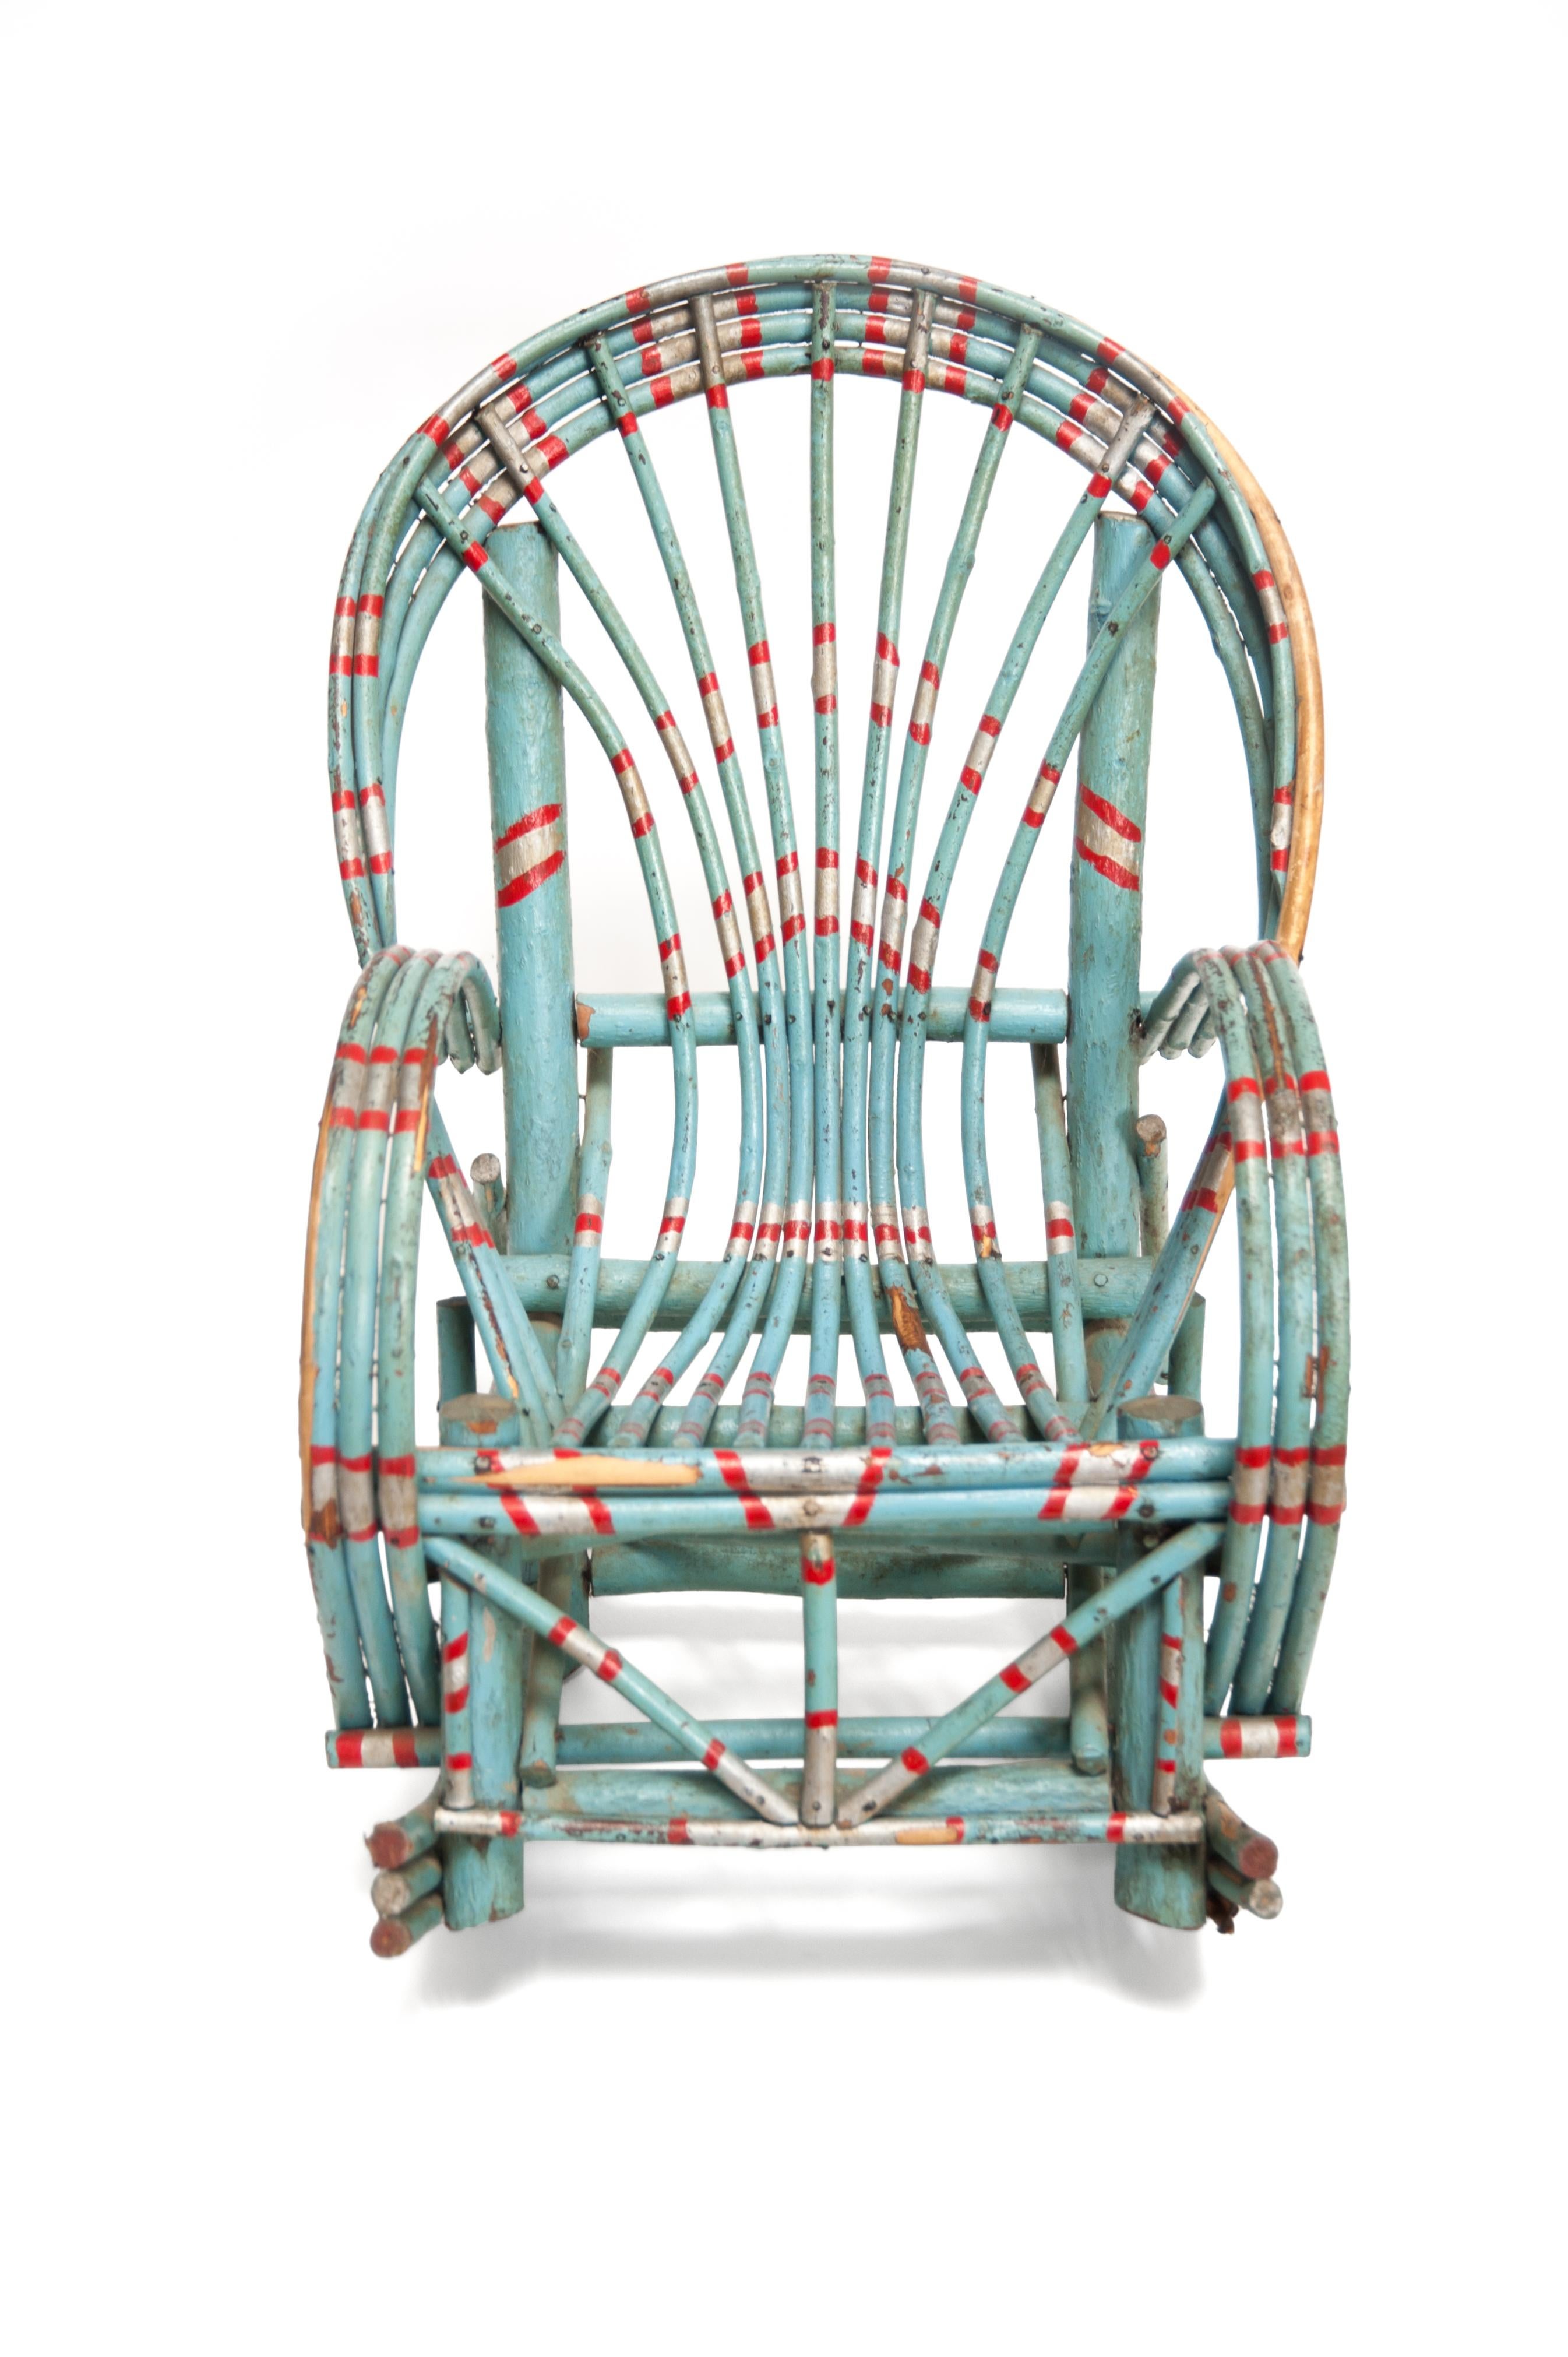 Handcrafted Folk Art rocking chair, designer unknown, USA, 1910s

Handcrafted Folk Art rocking chair
Designer unknown, USA, 1910s
Measures: H 25 in, W 17 in, D 24 in seat height 9 in.